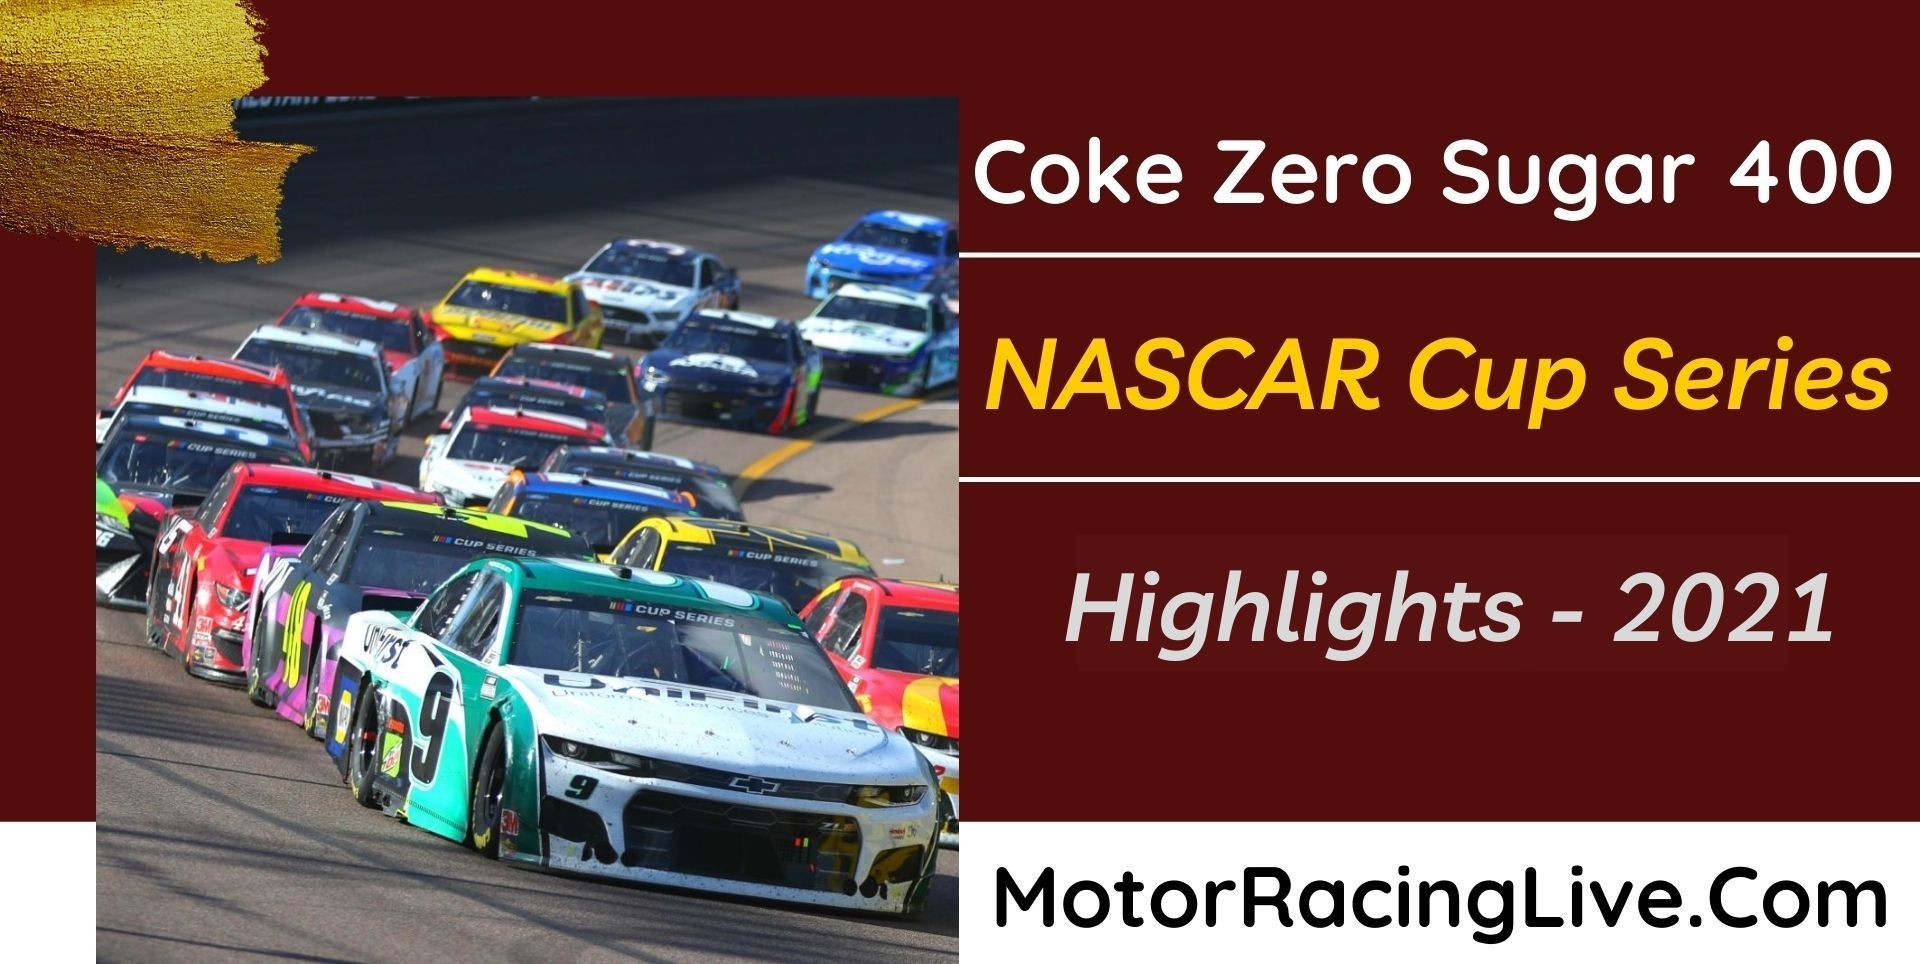 Coke Zero Sugar 400 Highlights 2021 NASCAR Cup Series